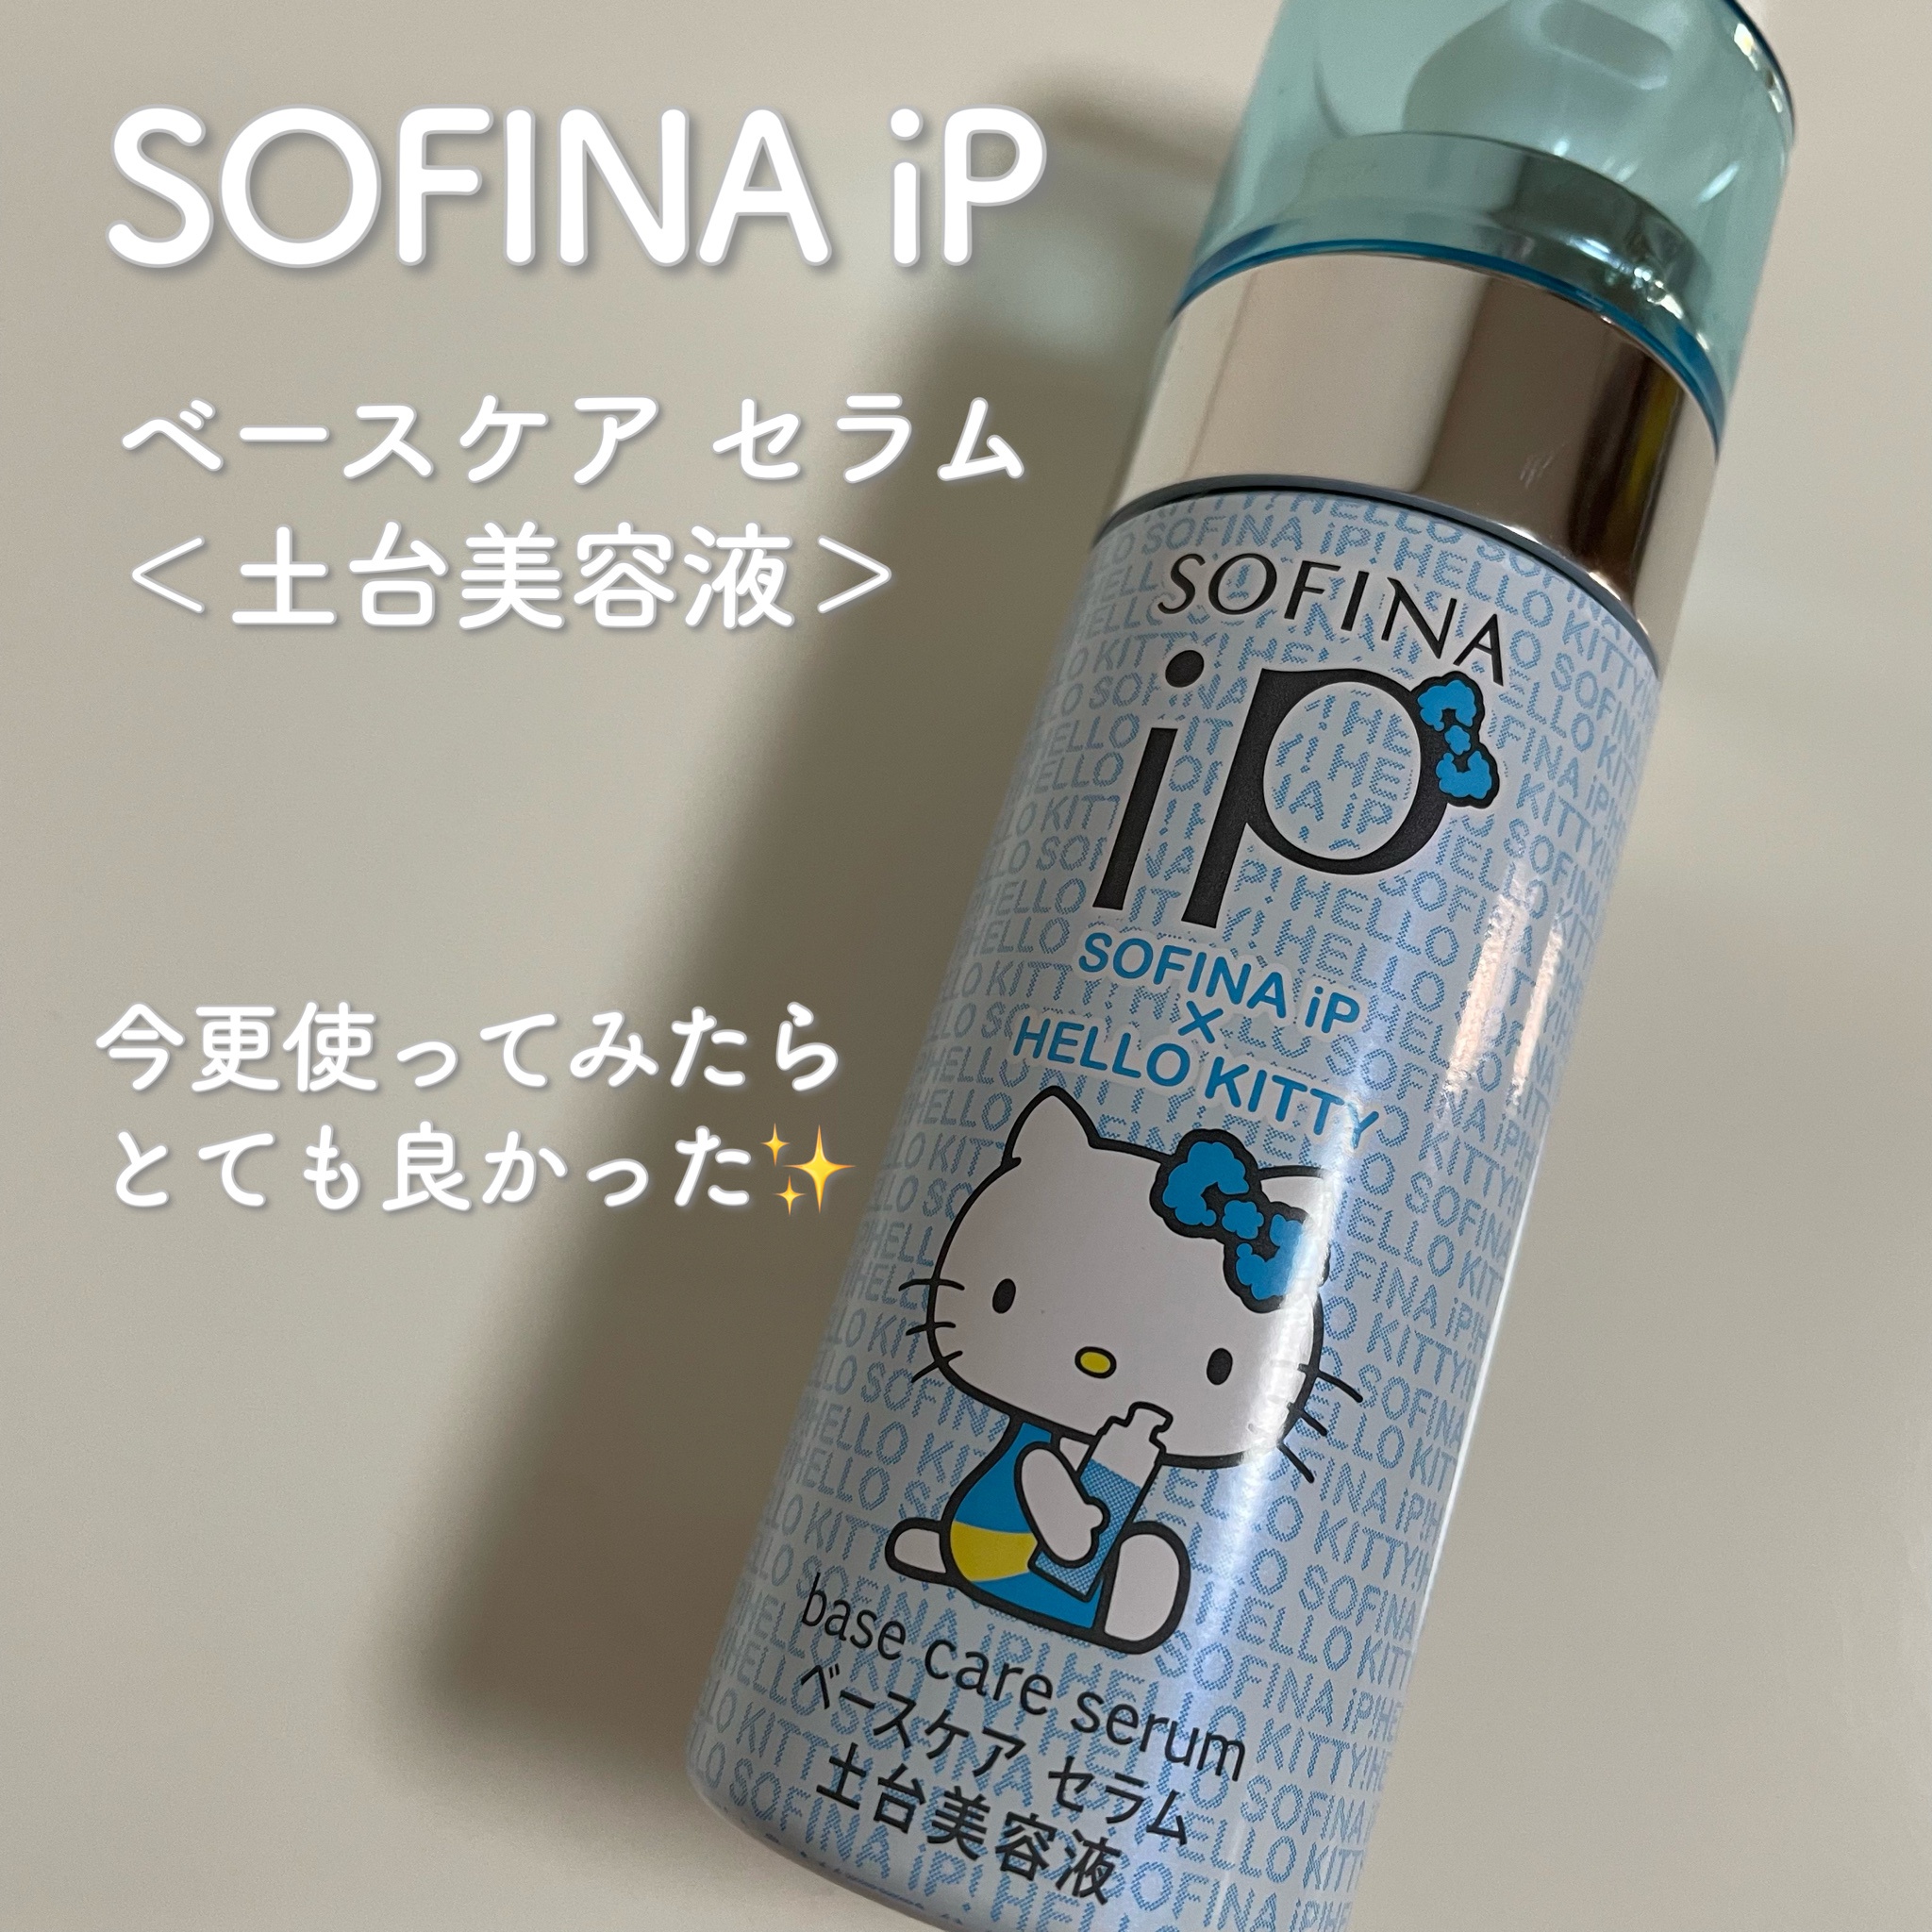 SOFINA iP / ベースケア セラム＜土台美容液＞(旧) ハローキティコラボ 